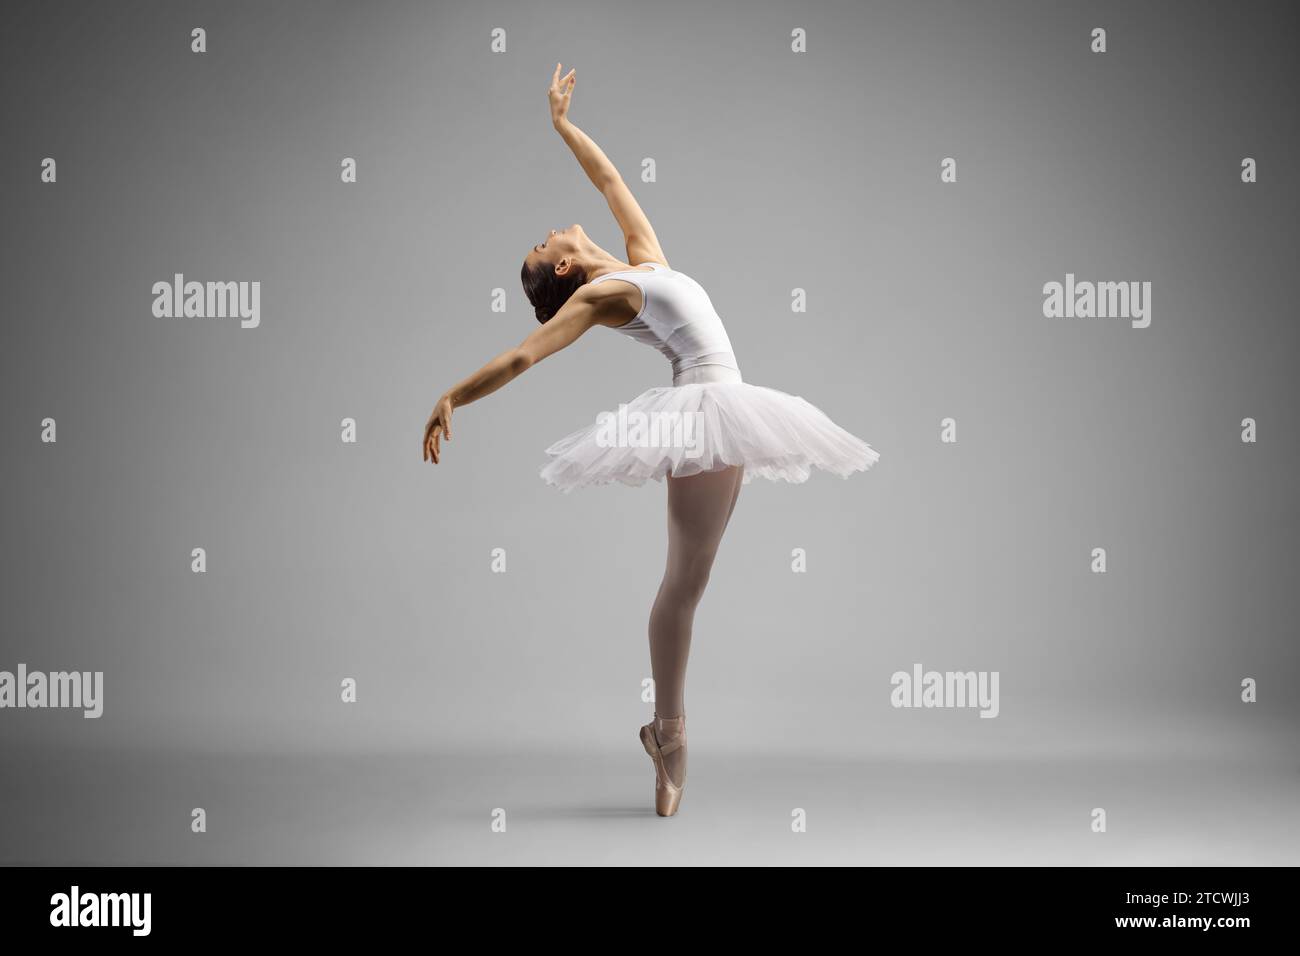 Aufnahme einer Ballerina in voller Länge, die auf grauem Hintergrund tanzt und sich nach hinten lehnt Stockfoto